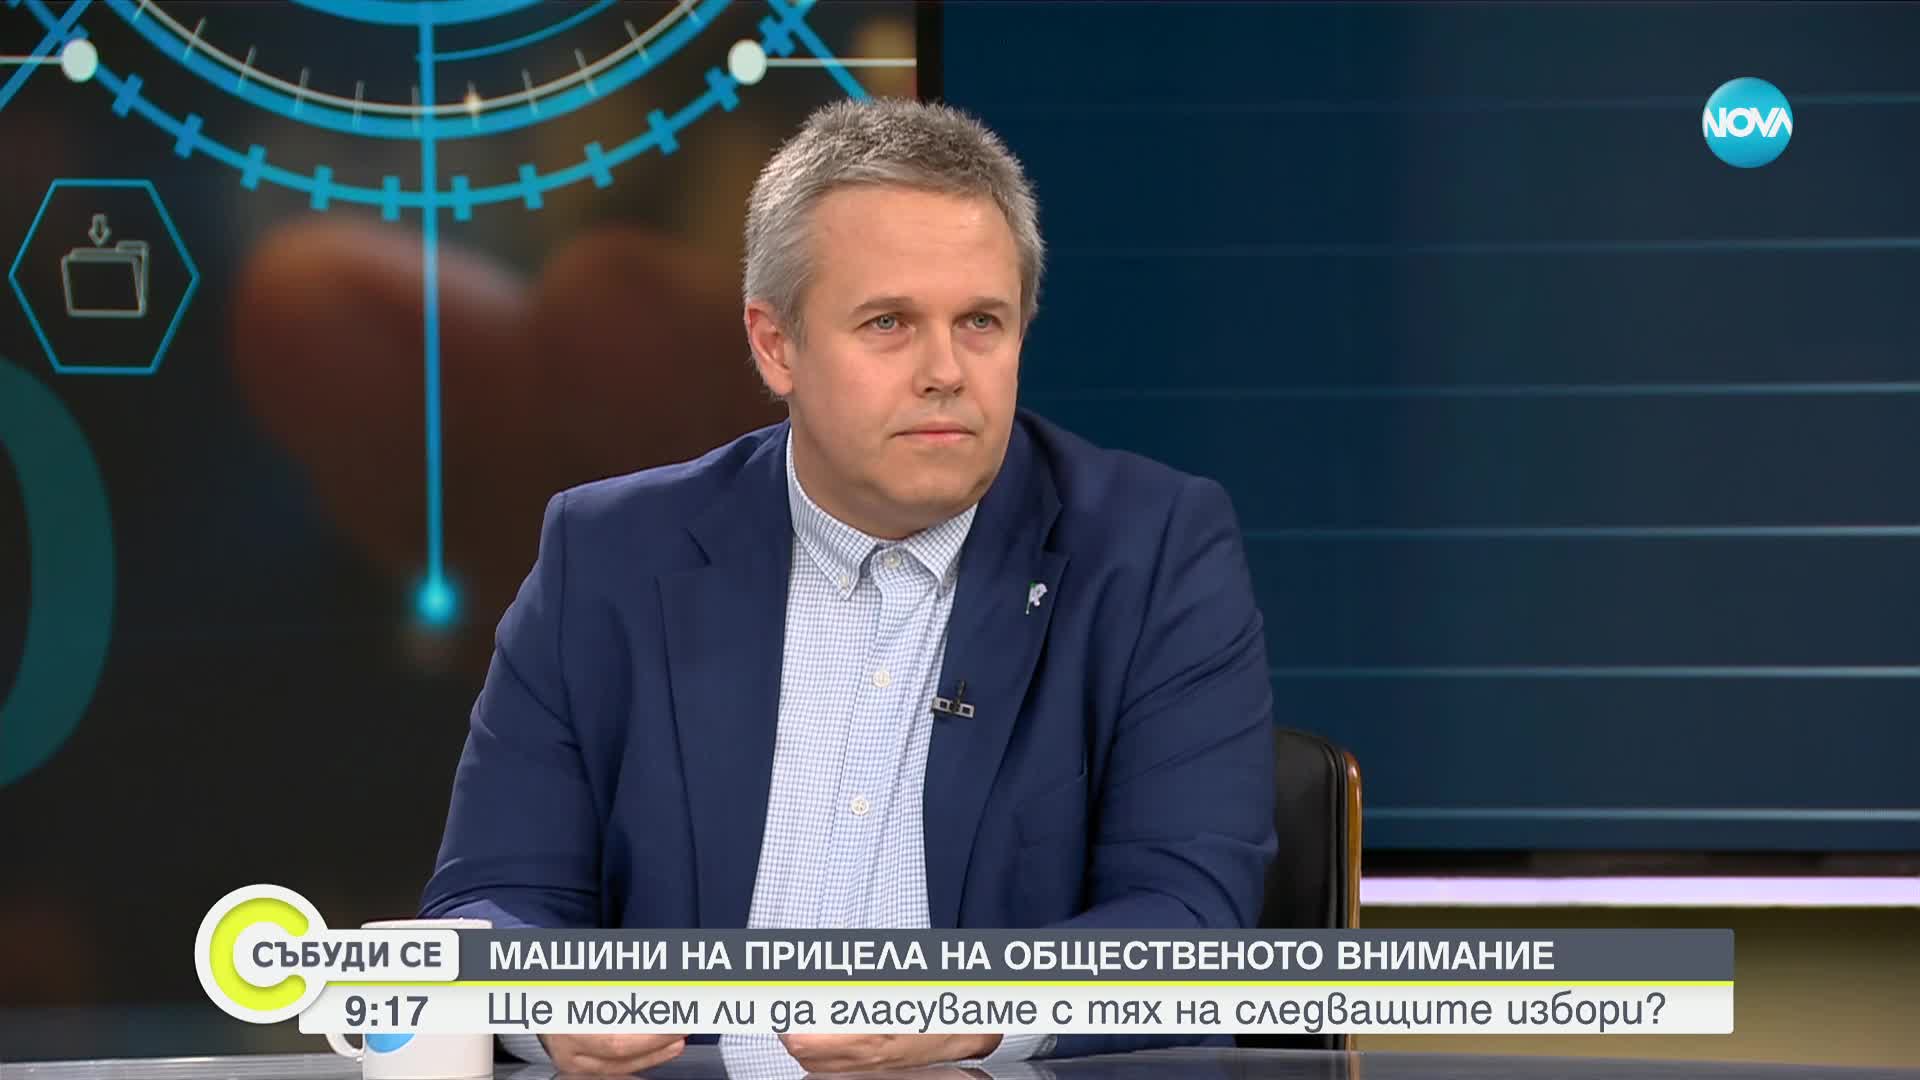 Йоловски: Постът ми беше предложен от лице, което е в политическия кабинет на министър-председателя